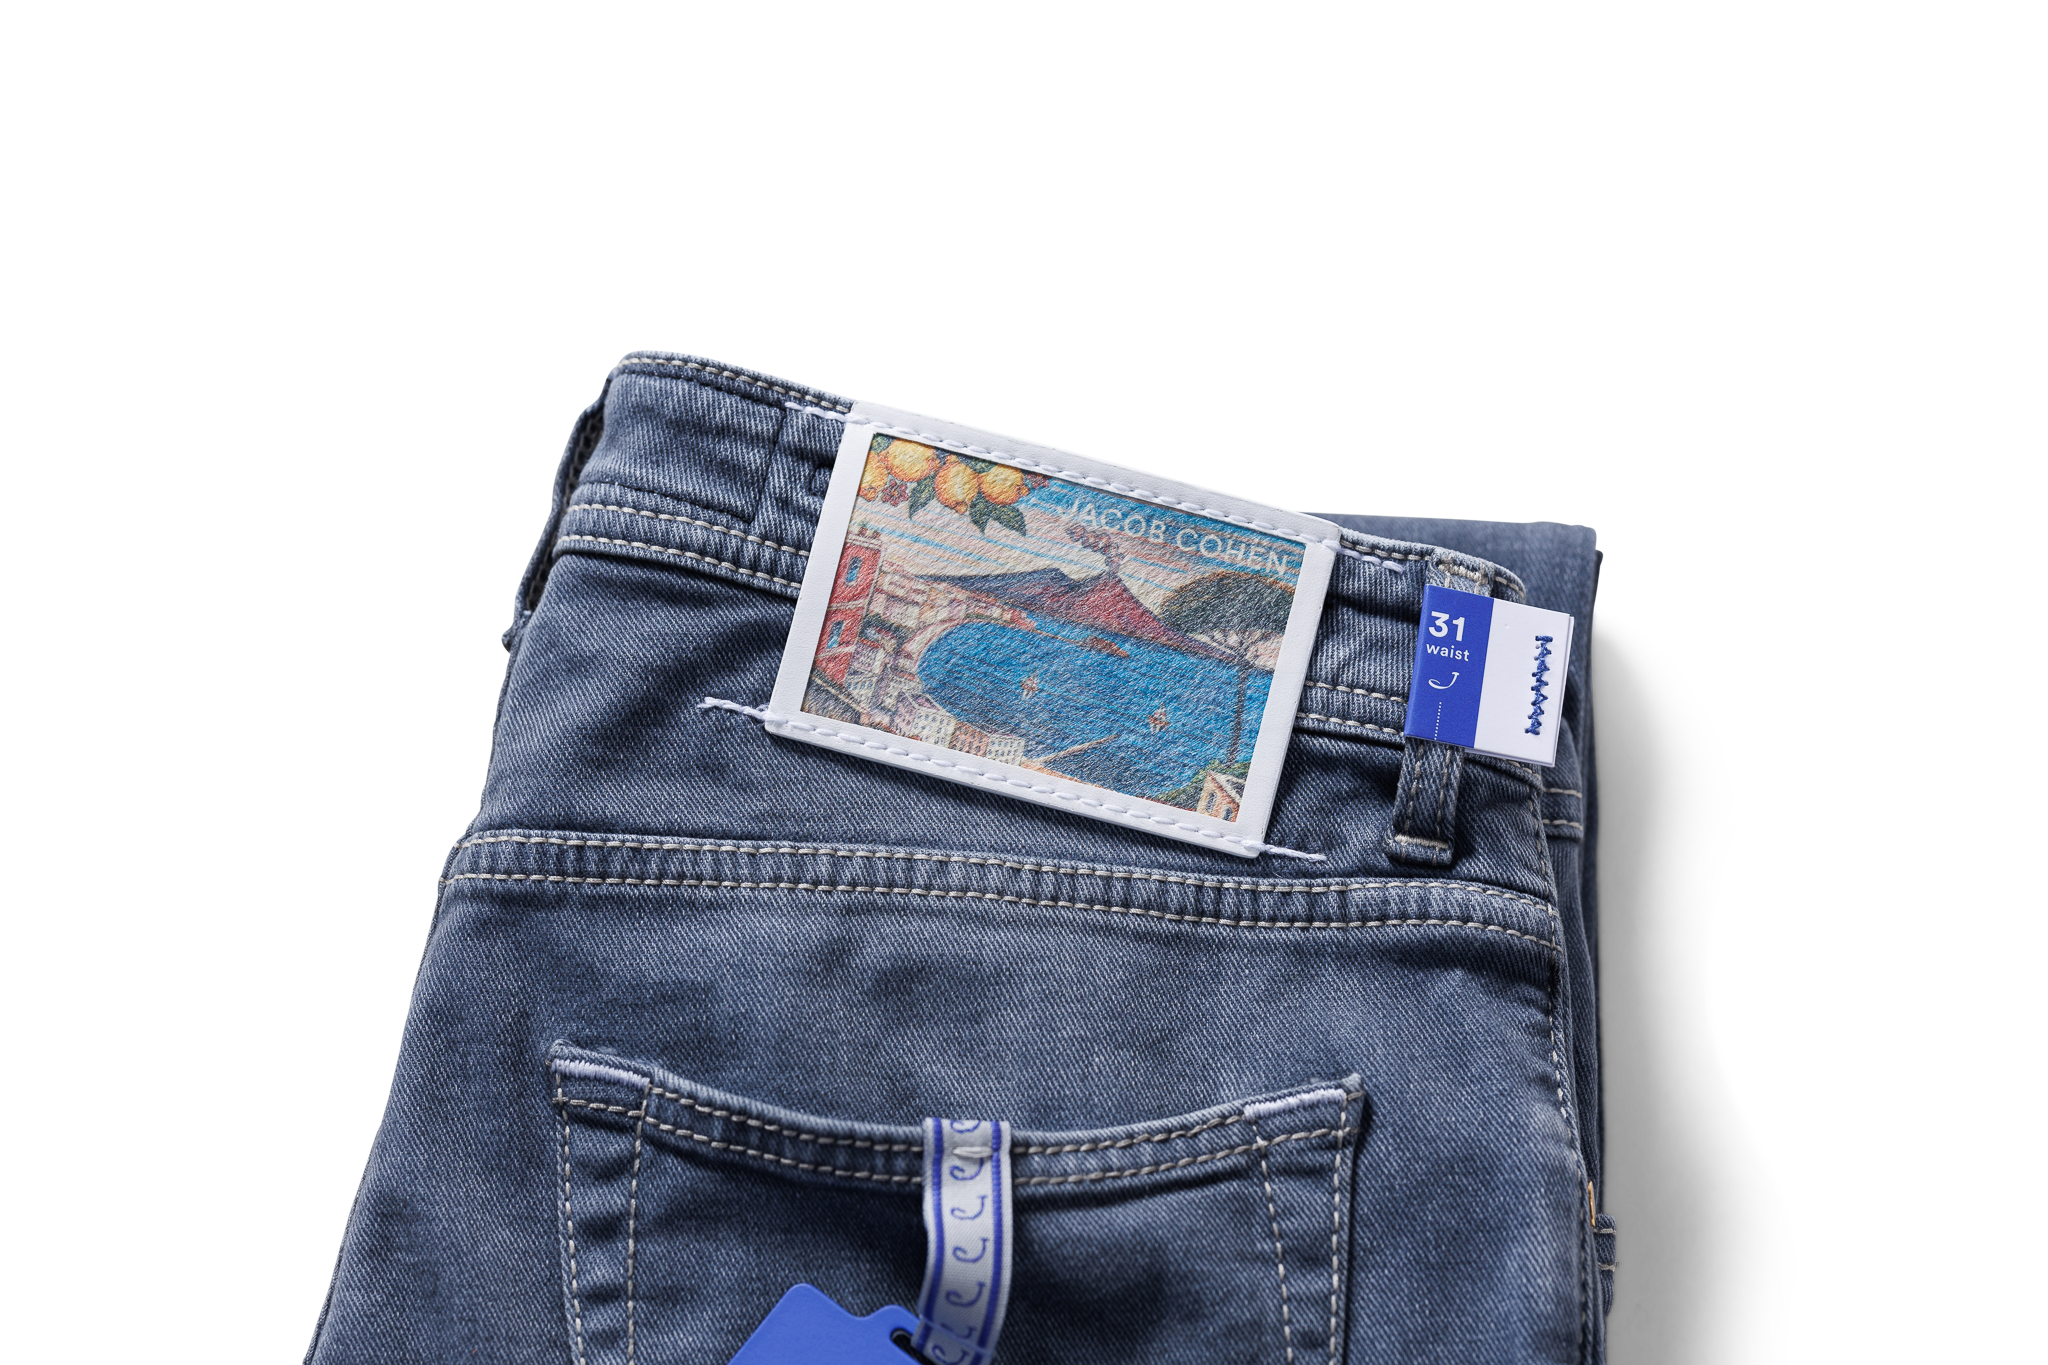 Jacob Cohen 5 Pocket Jeans - Lichtgrijs